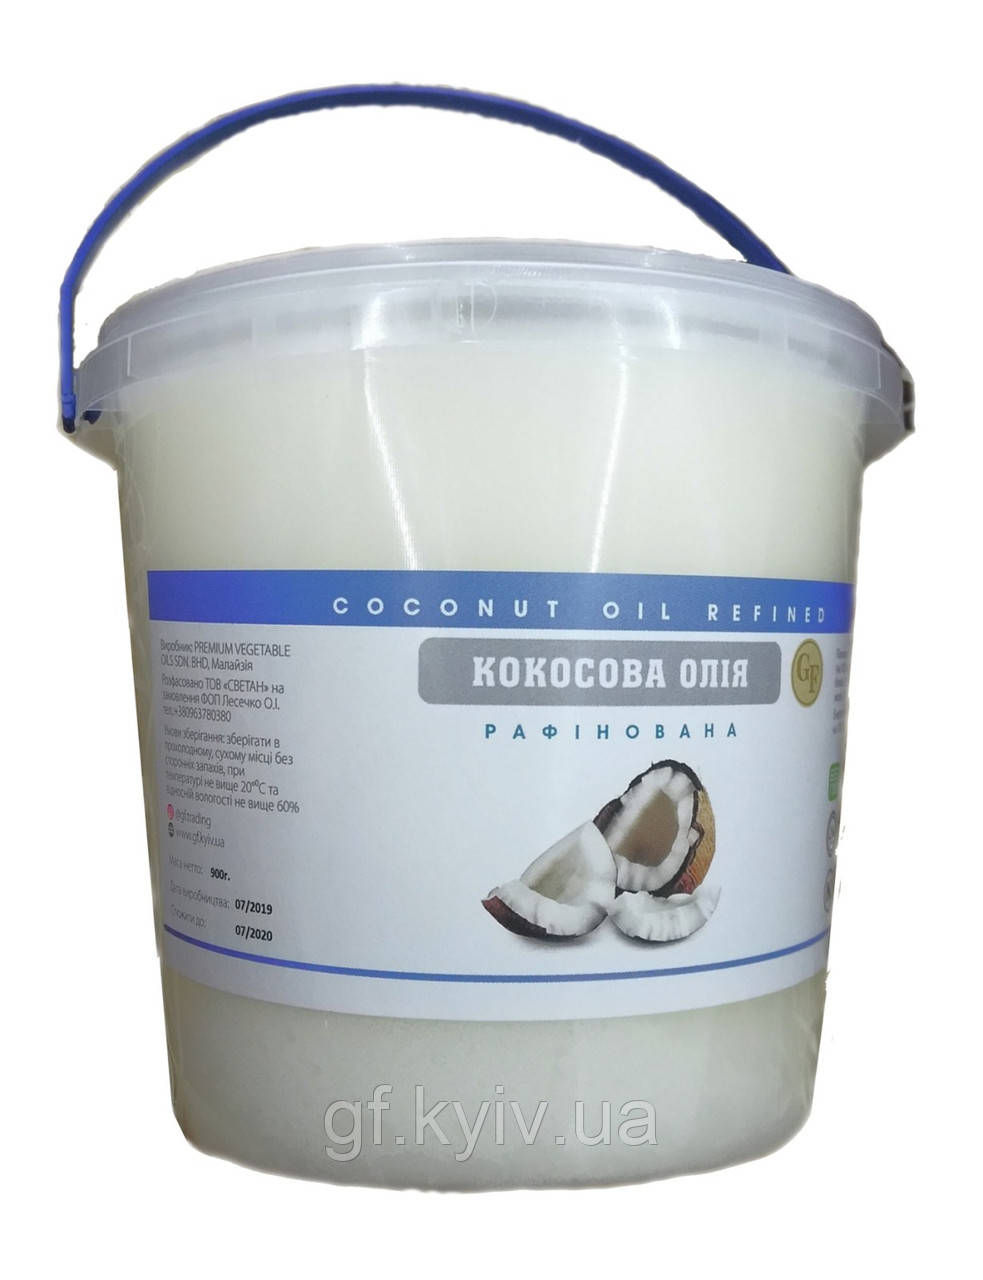 Кокосова олія 900г харчова рафінована дезодорована (RBD) Малайзія  для кулінарії та косметології